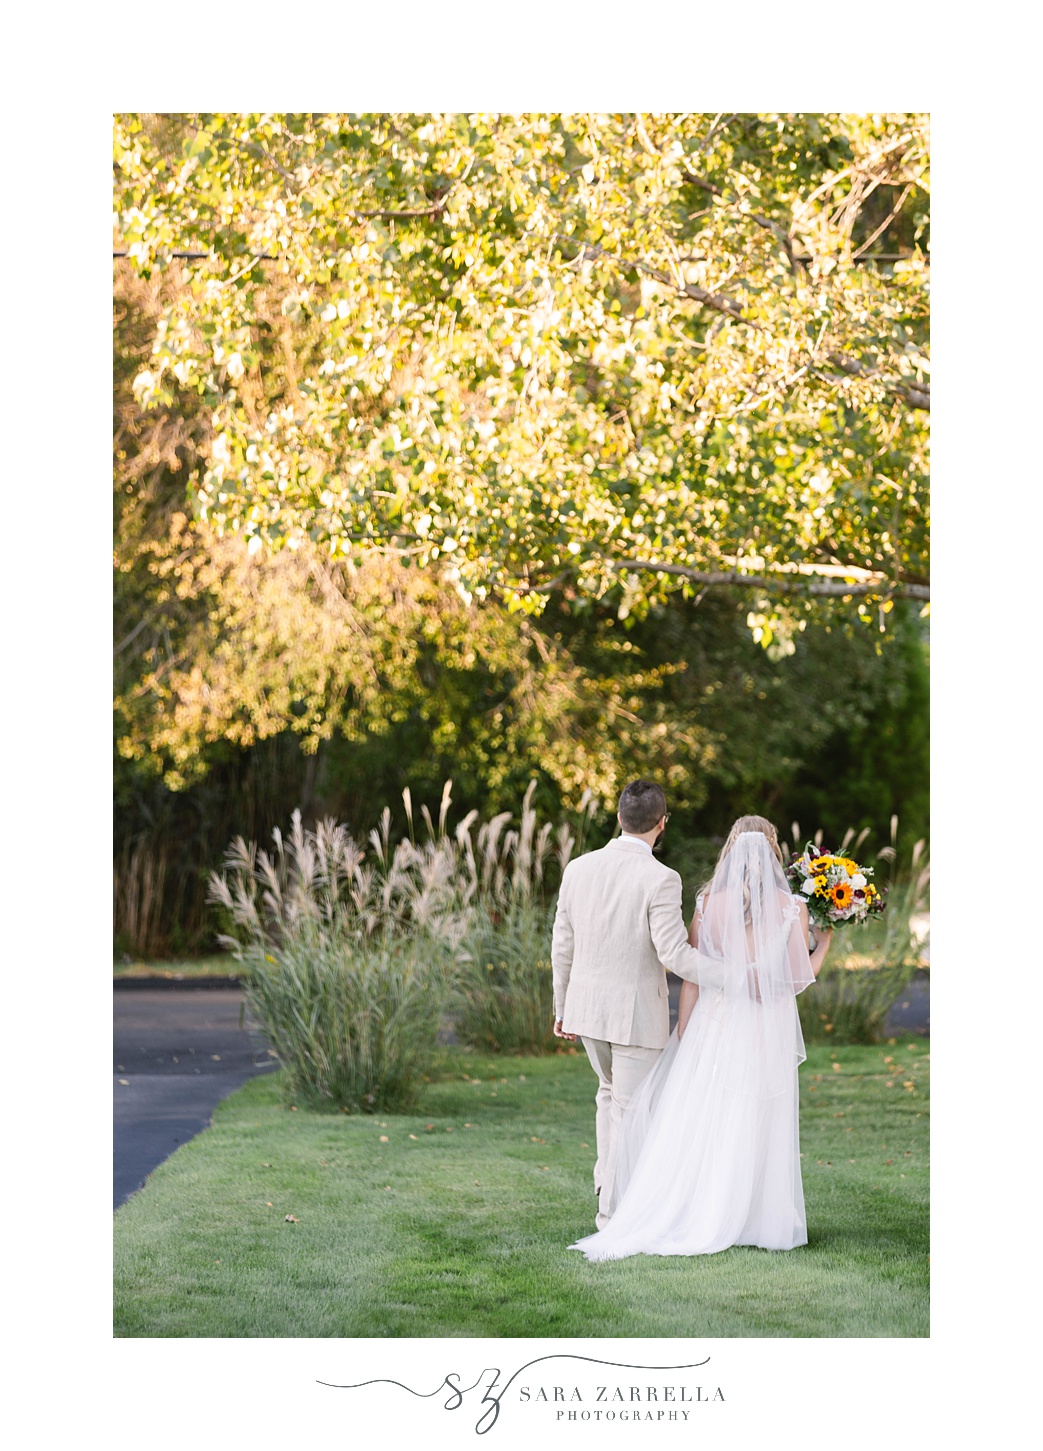 newlyweds walk away from ceremony in Warwick RI backyard